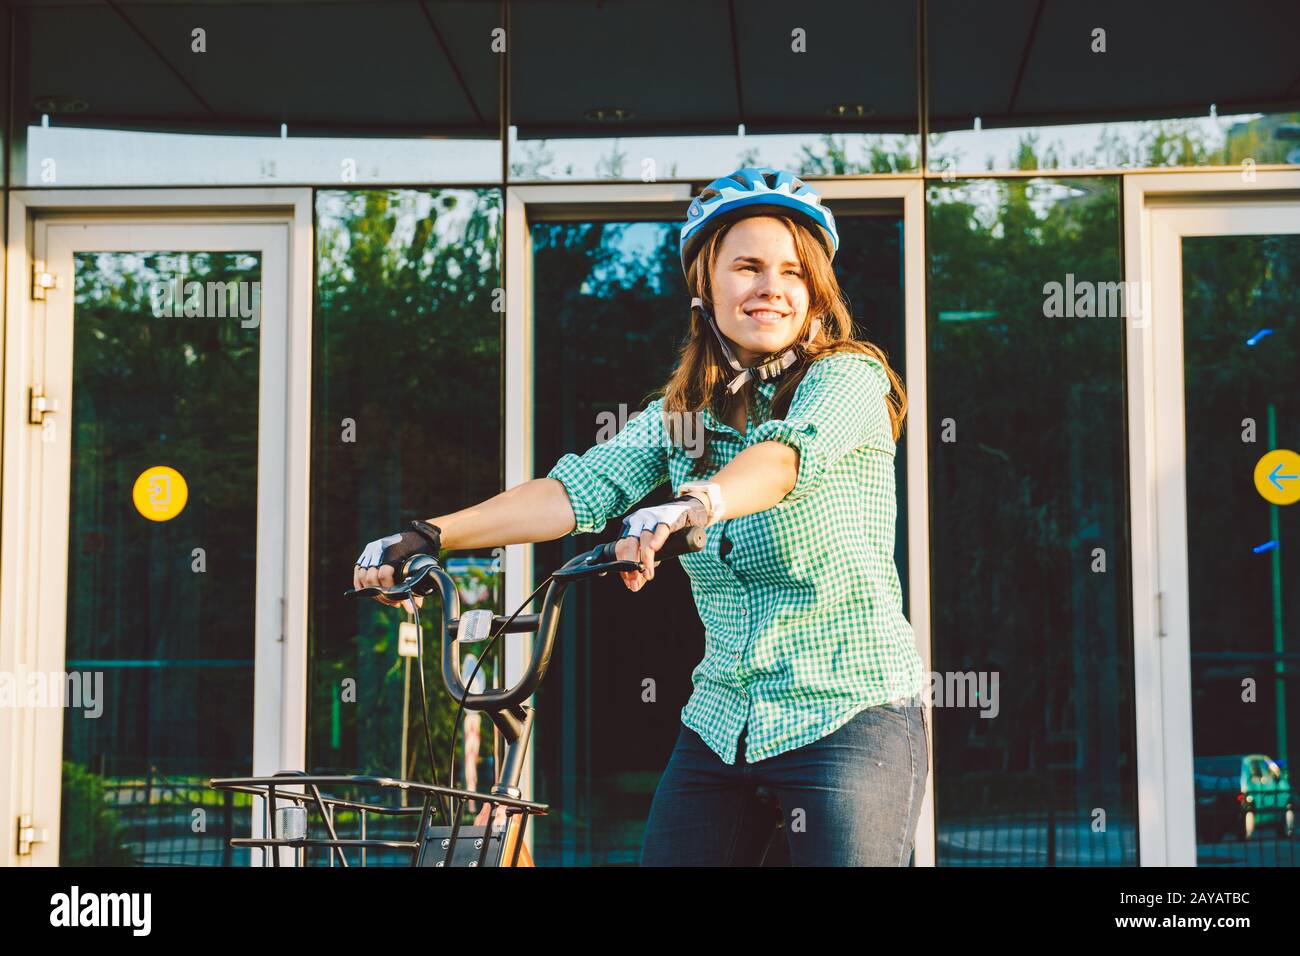 Thema für die Arbeit am Fahrrad. Eine junge kaukasische Frau kam mit einem umweltfreundlichen Transportfahrrad ins Büro. Mädchen in a B. Stockfoto